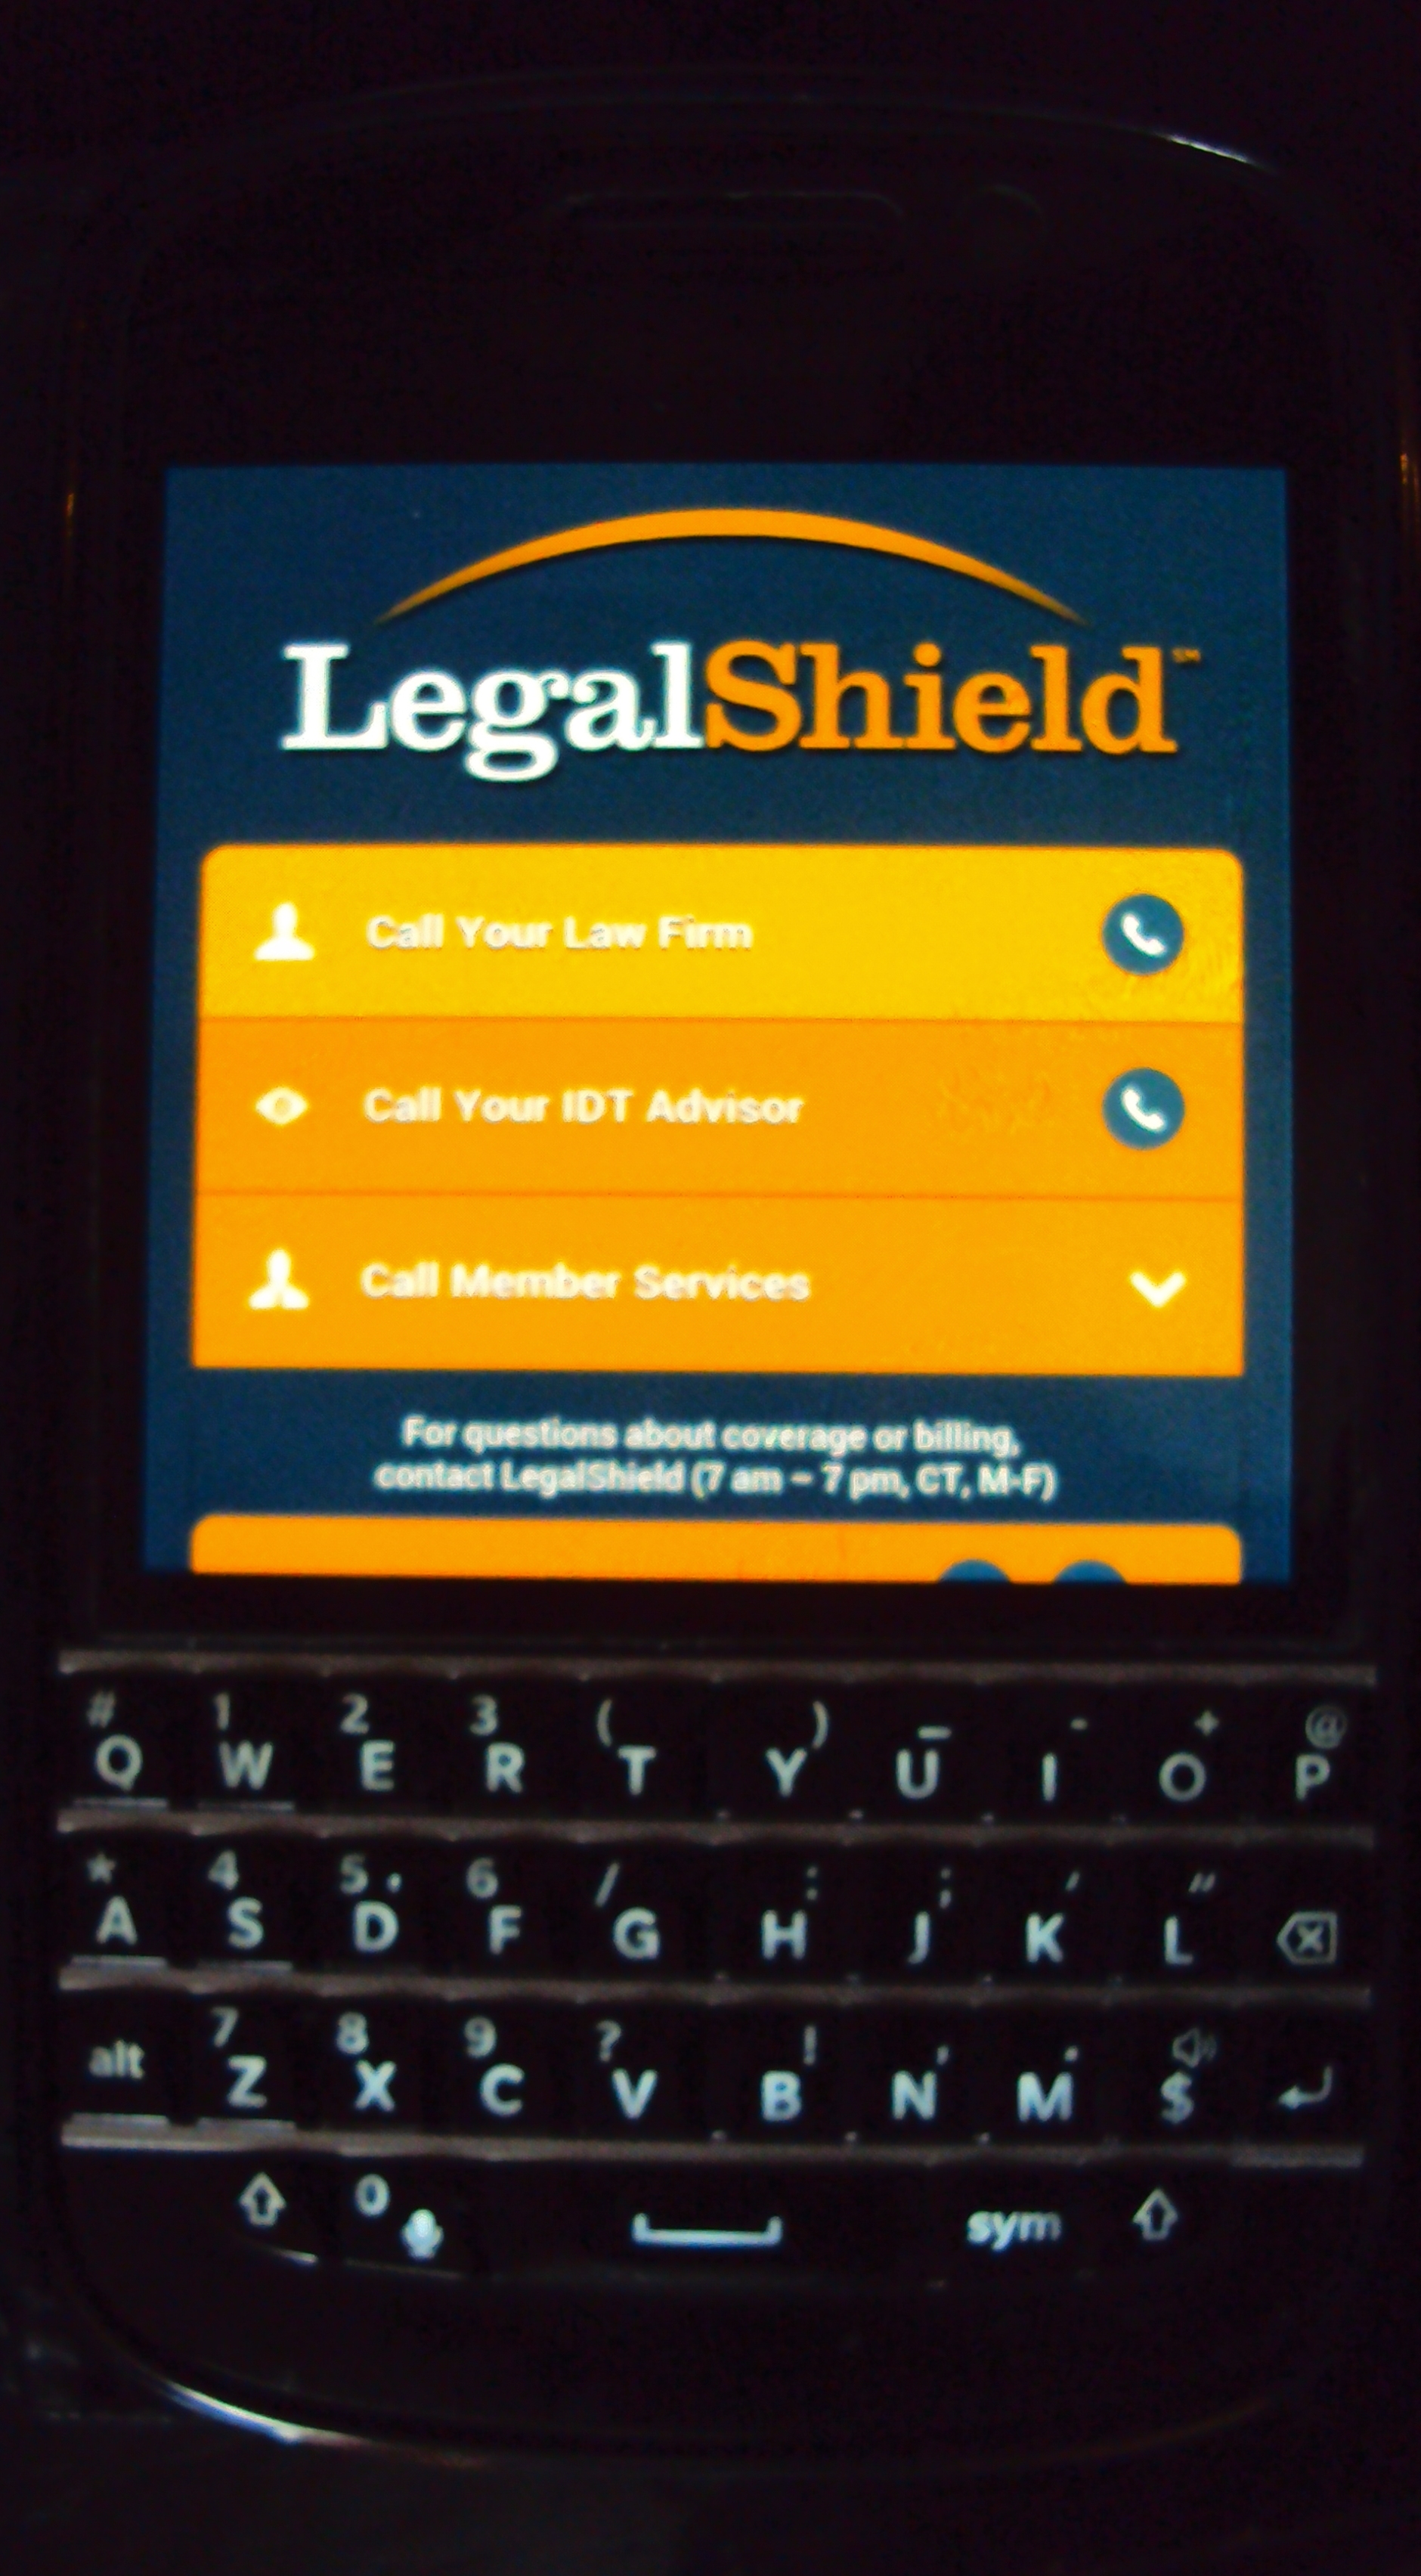 LegalShield App on Blackberry!